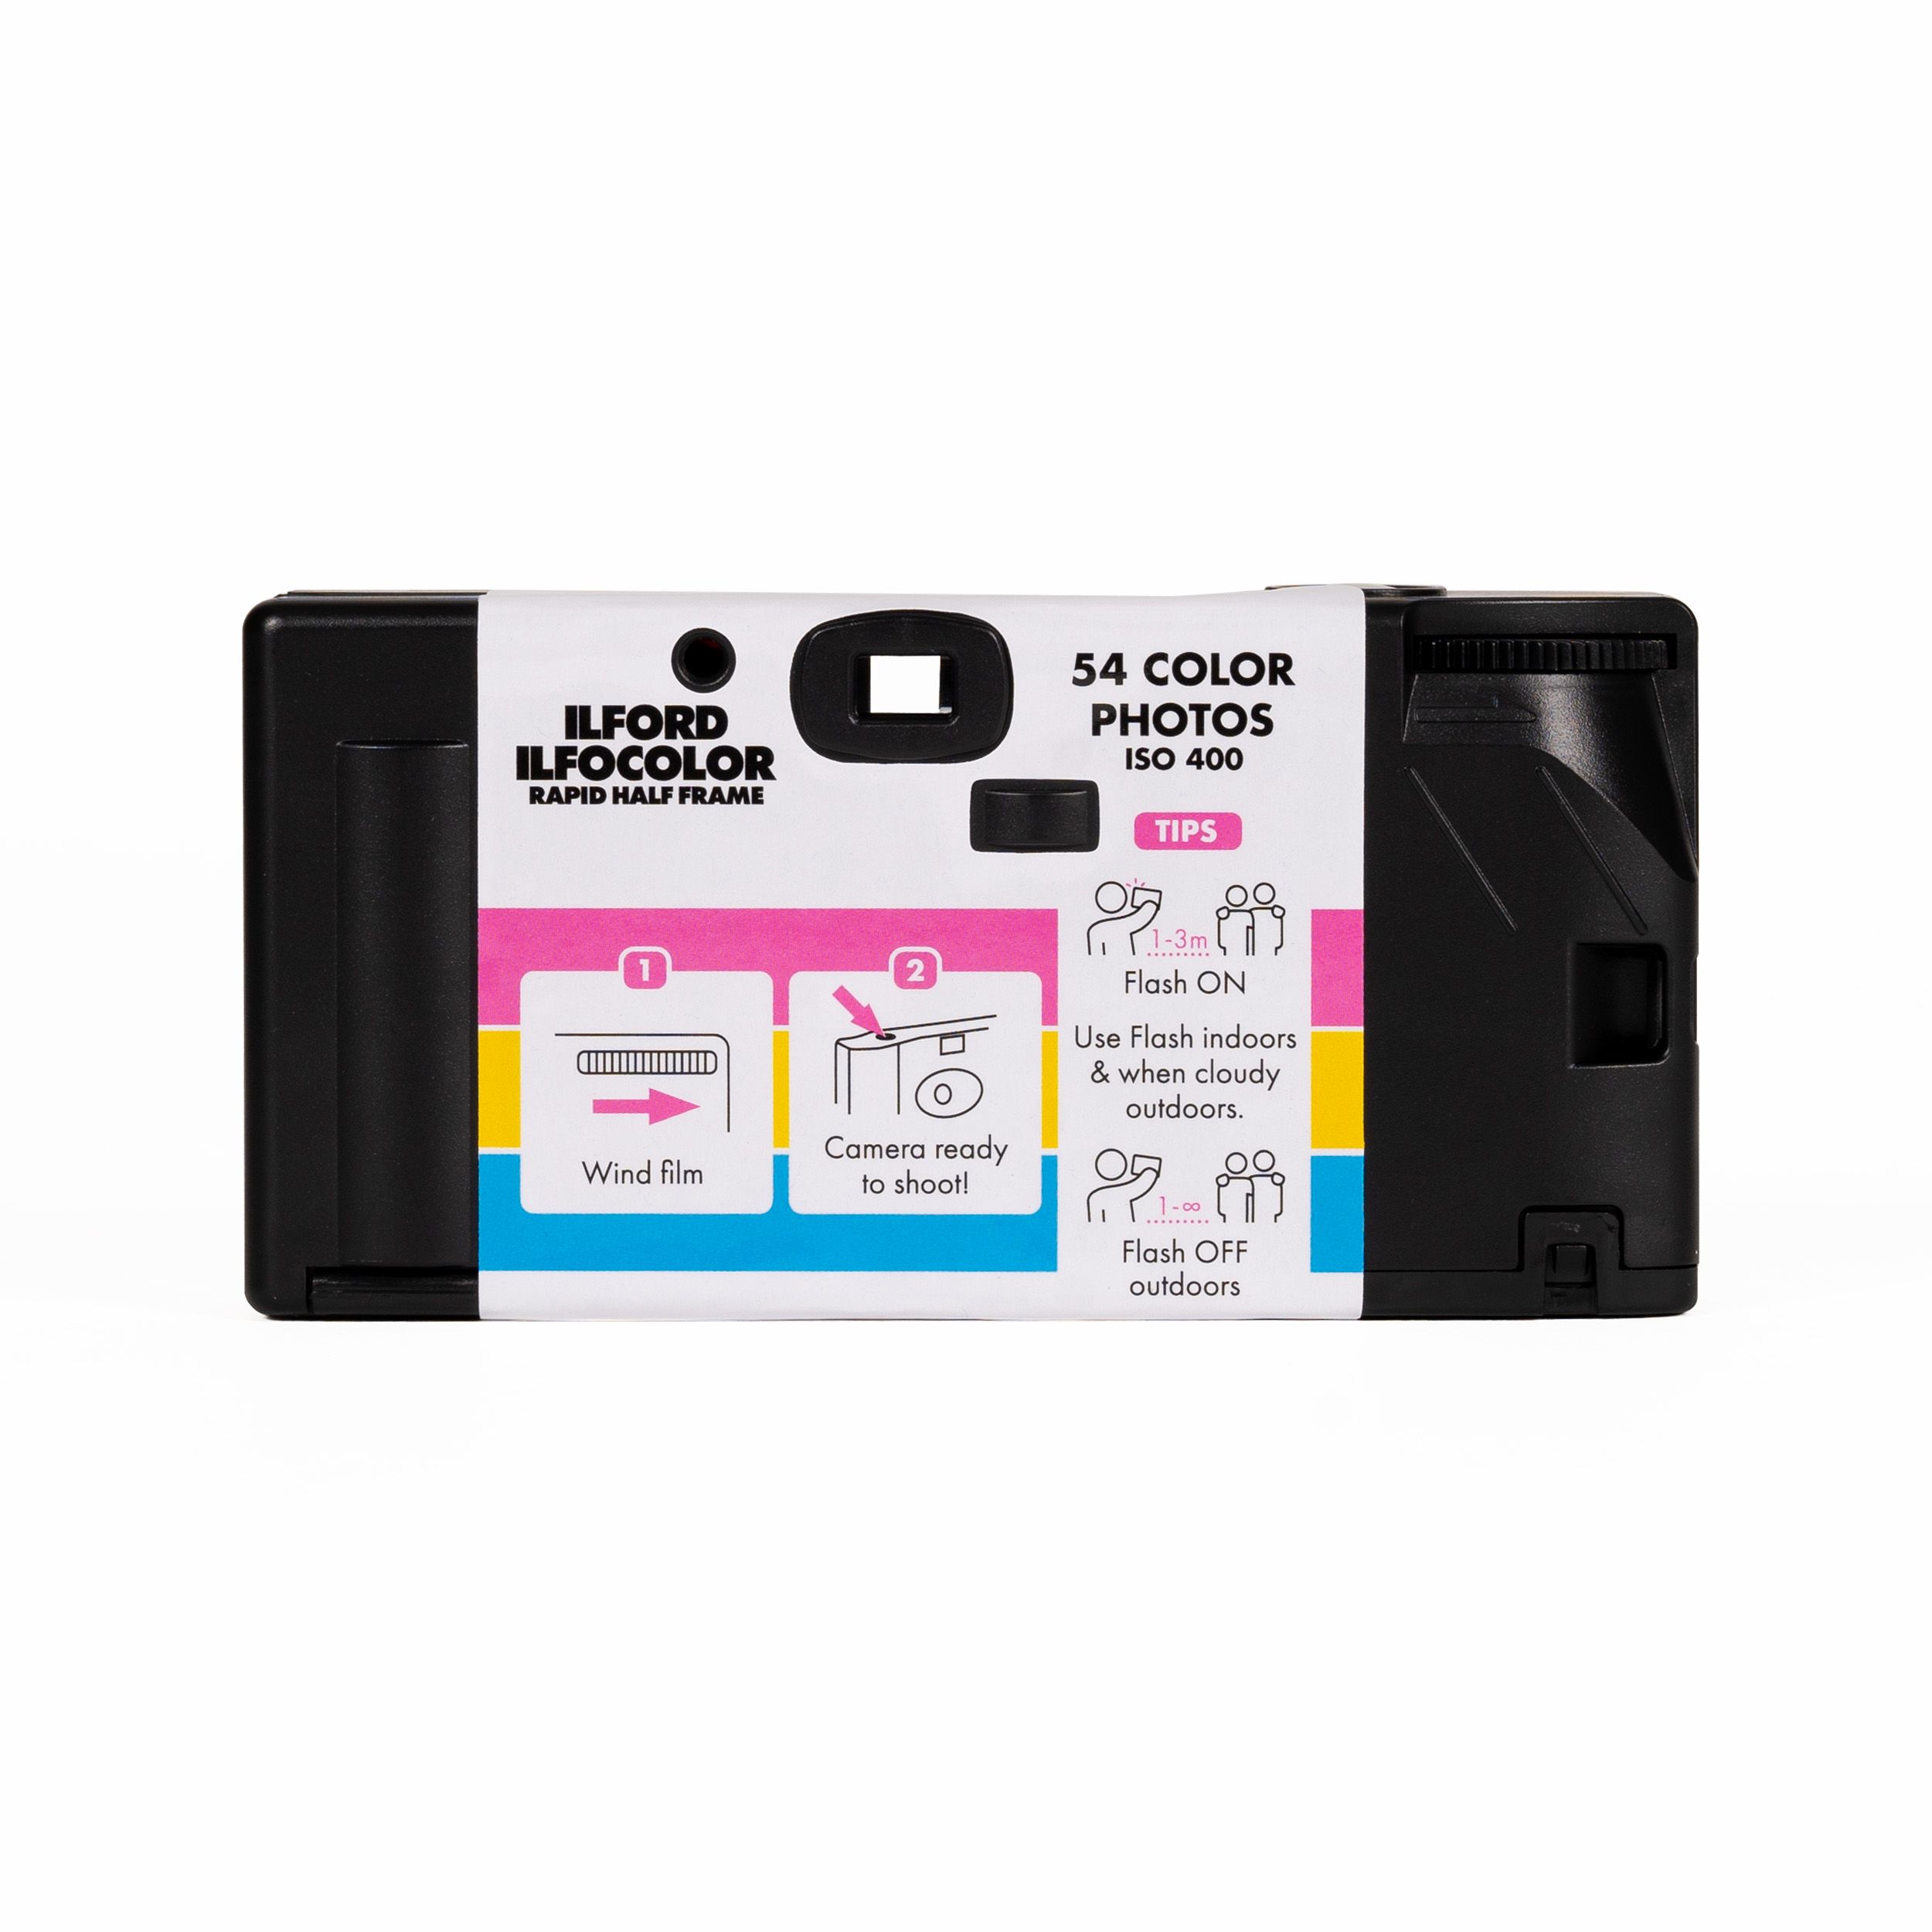 Ilford IlfoColor Rapid Half-Frame Colour Film Camera - Includes 54 Exposures